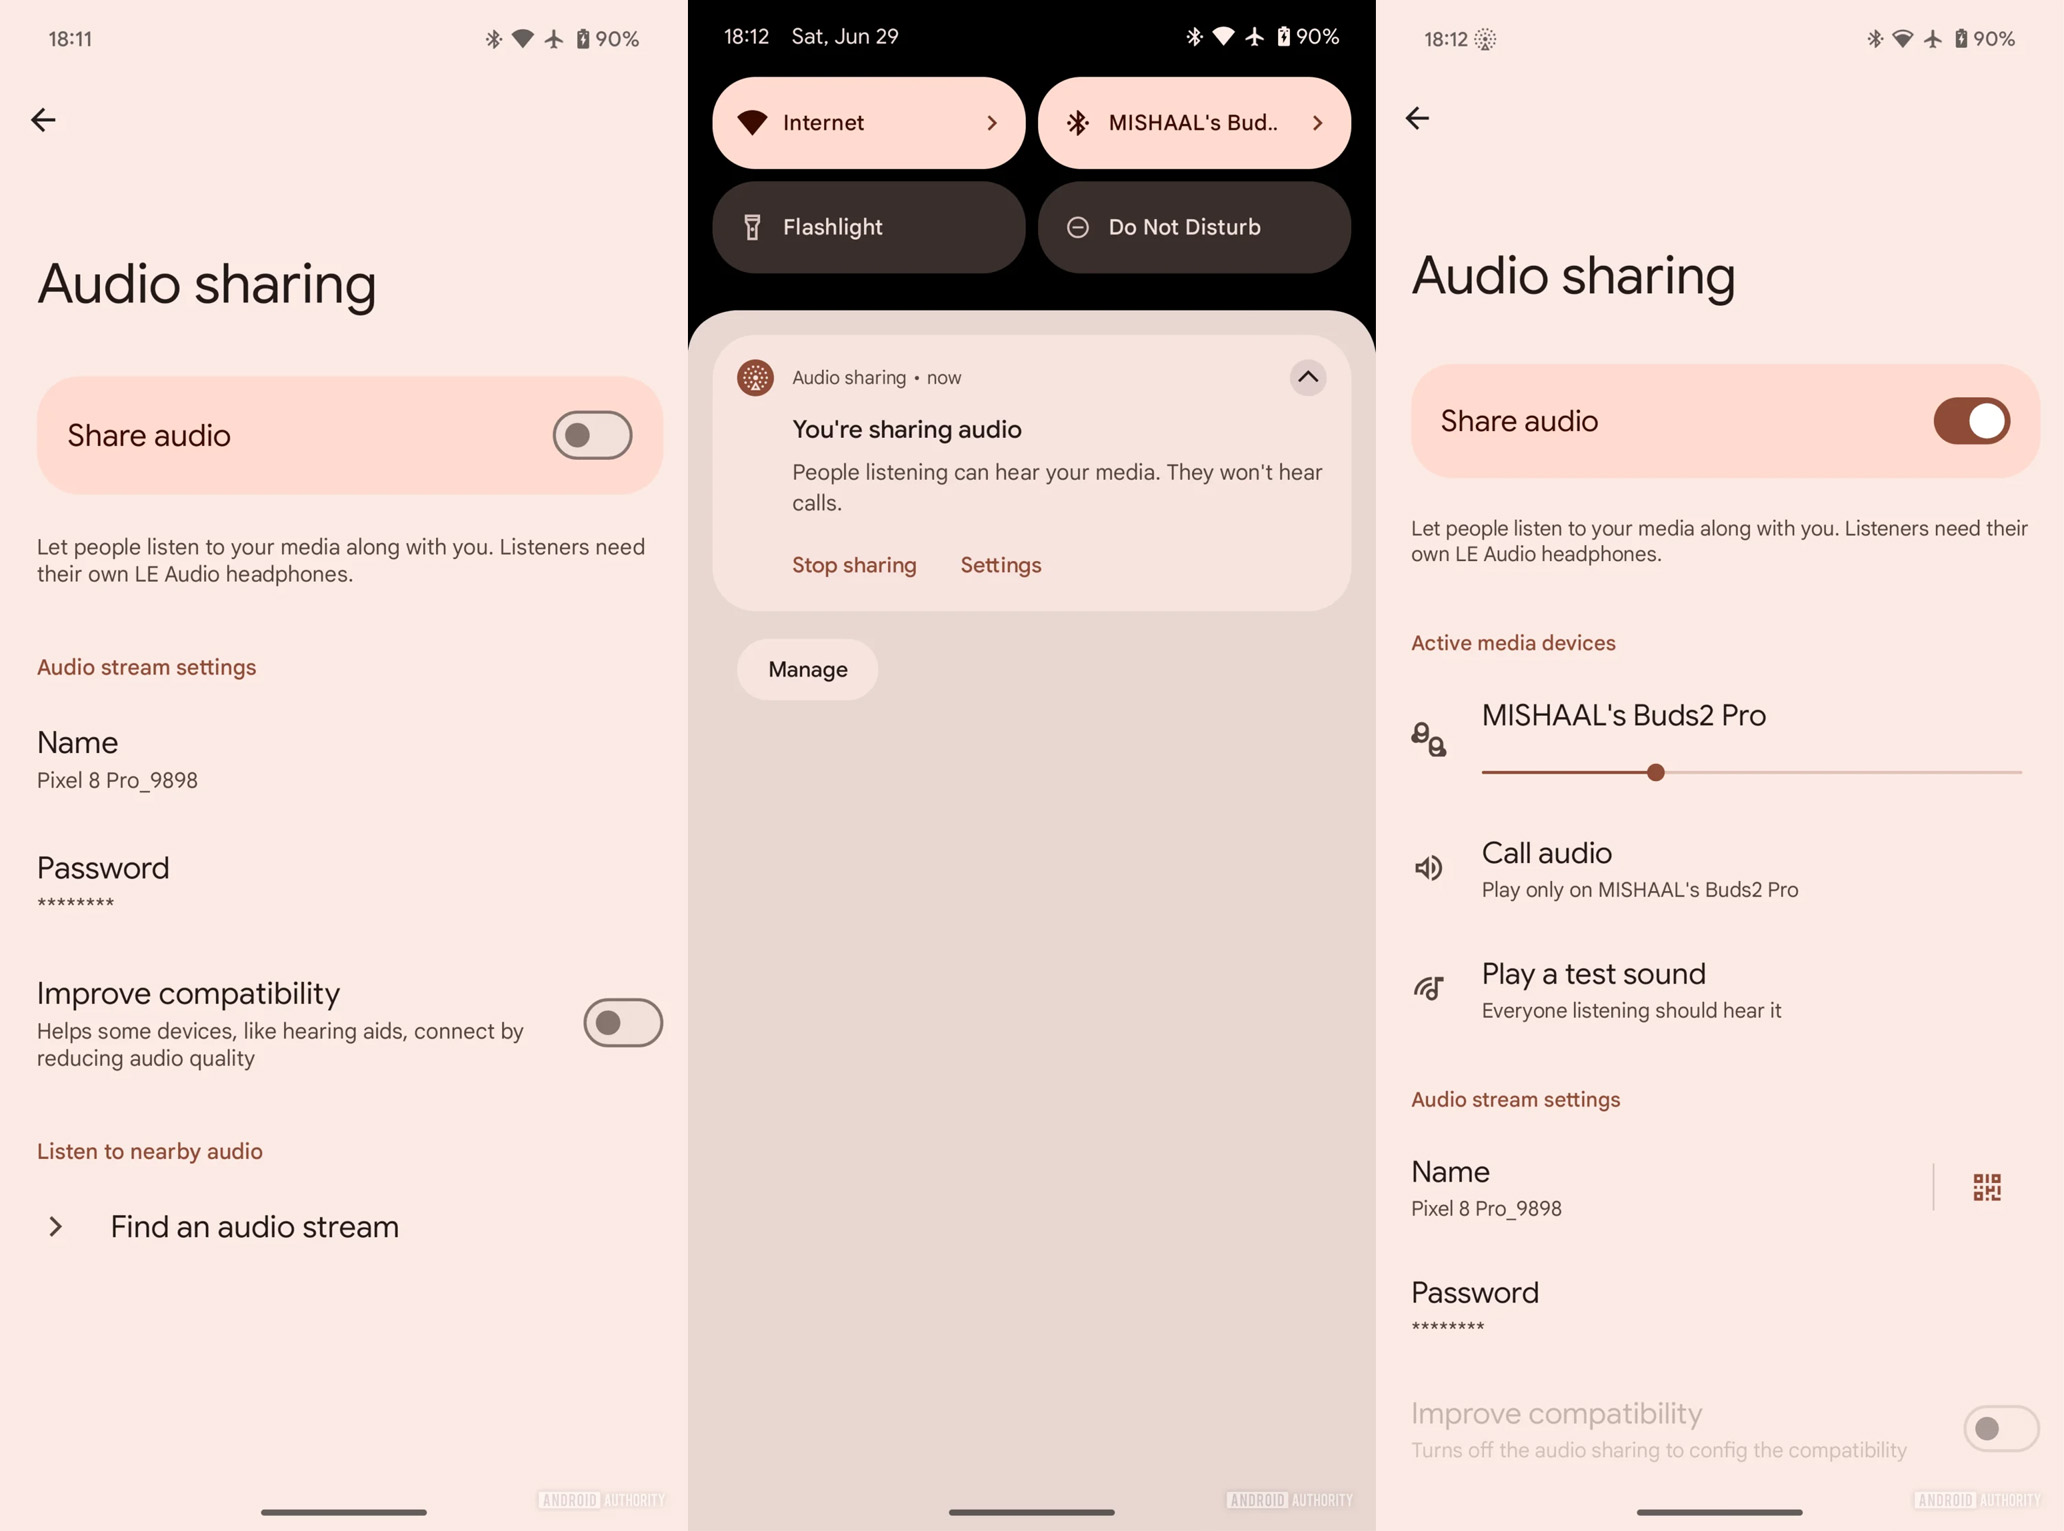 Google còn tinh chỉnh giao diện thông báo Auracast và trang cài đặt Chia sẻ âm thanh, giúp mọi thứ trở nên trực quan và dễ sử dụng hơn (Ảnh: Internet)